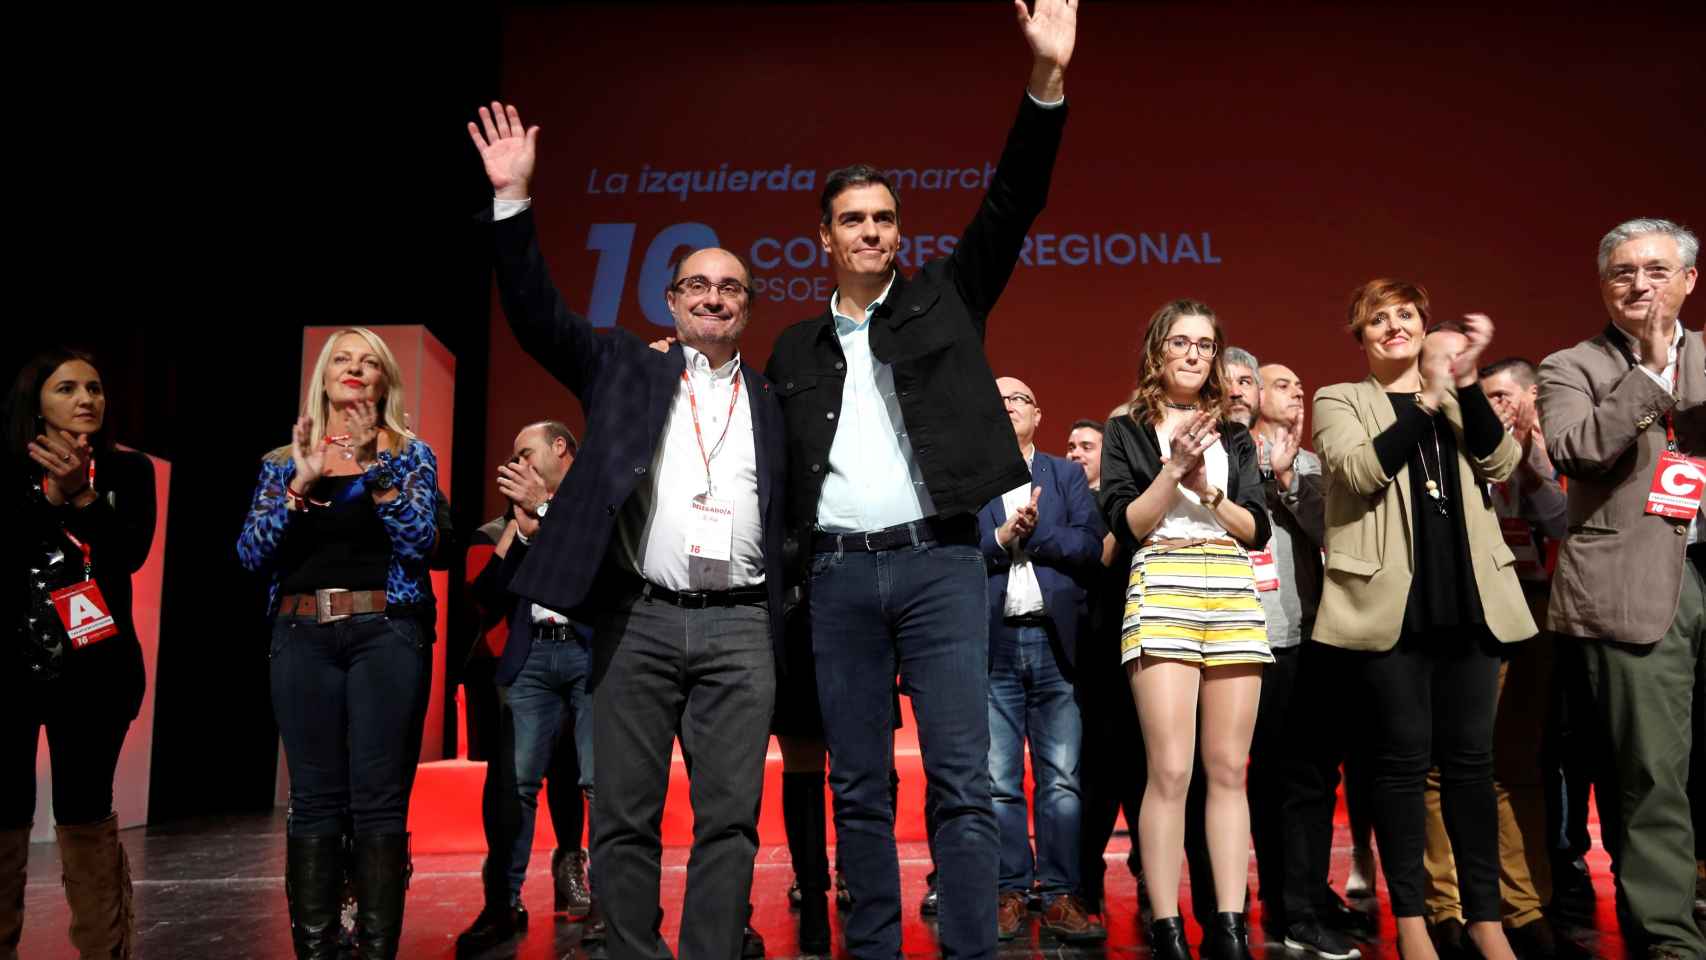 Pedro Sánchez junto al líder de los socialistas aragoneses reelegido este sábado, Javier Lambán